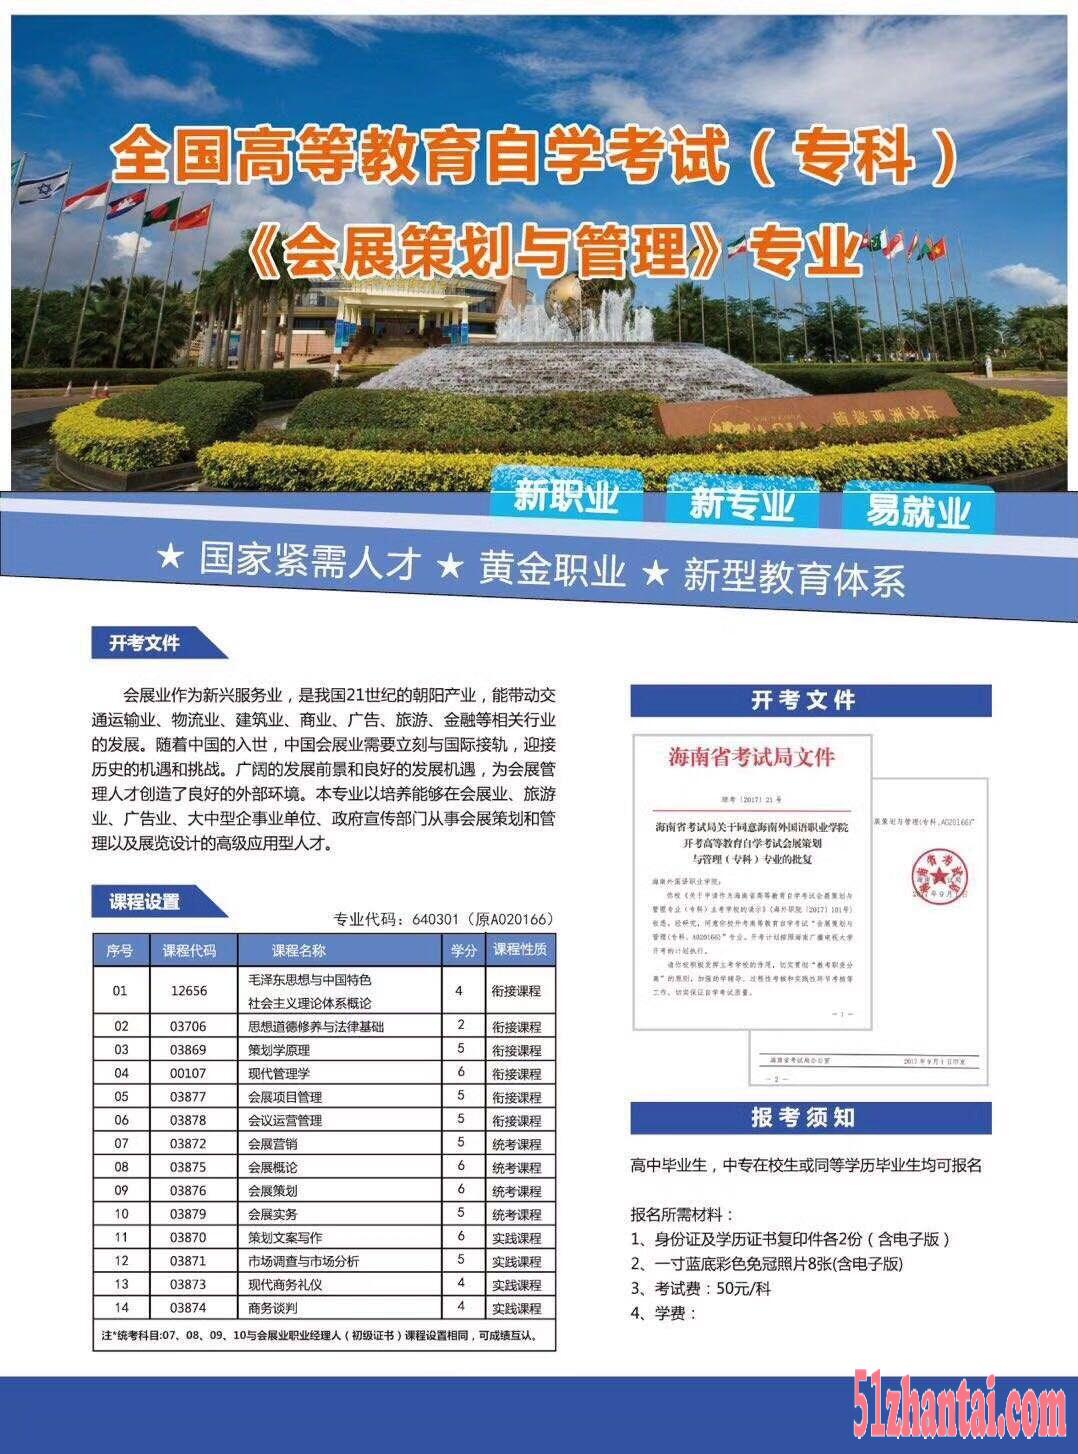 海南外国语职业学院北京周边成就自己的学业梦想-图1